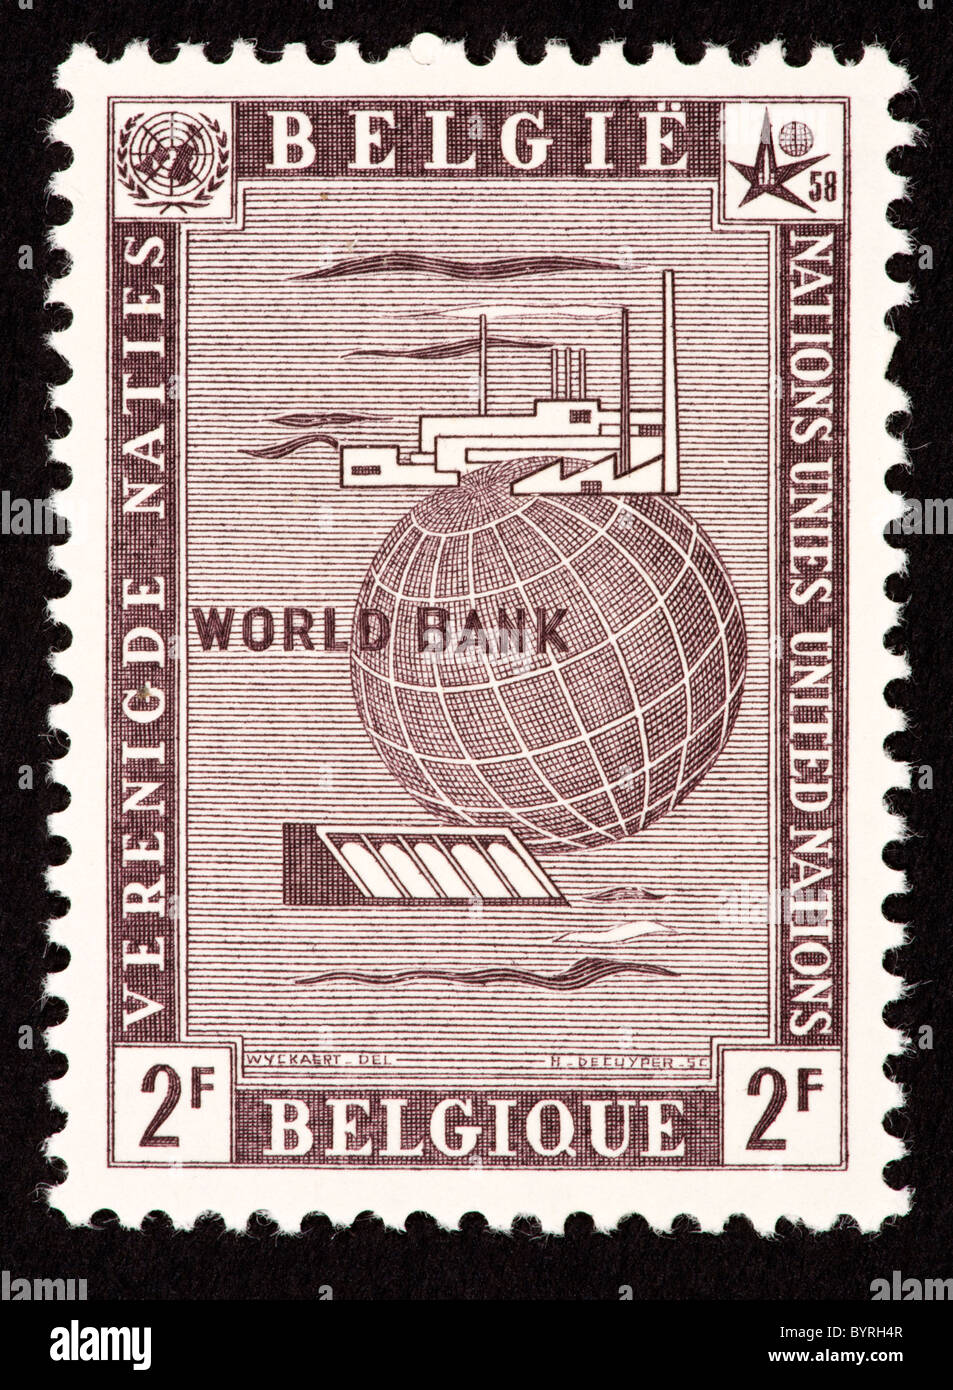 Timbre-poste de Belgique représentant du commerce (pour l'Organisation des Nations Unies et la Banque mondiale). Banque D'Images